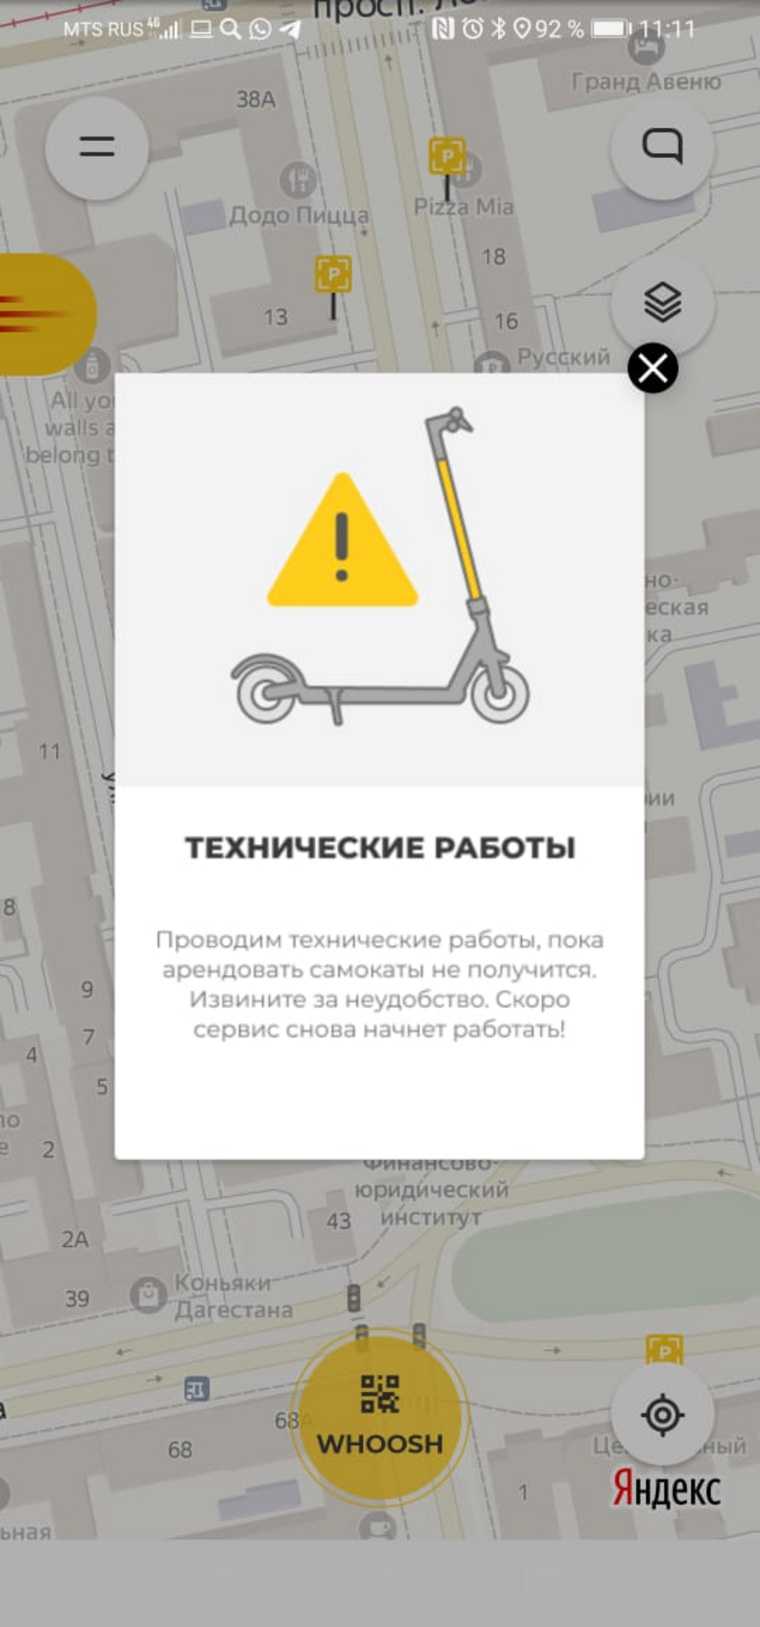 Сервис самокатов Whoosh сообщил об убытках в Екатеринбурге